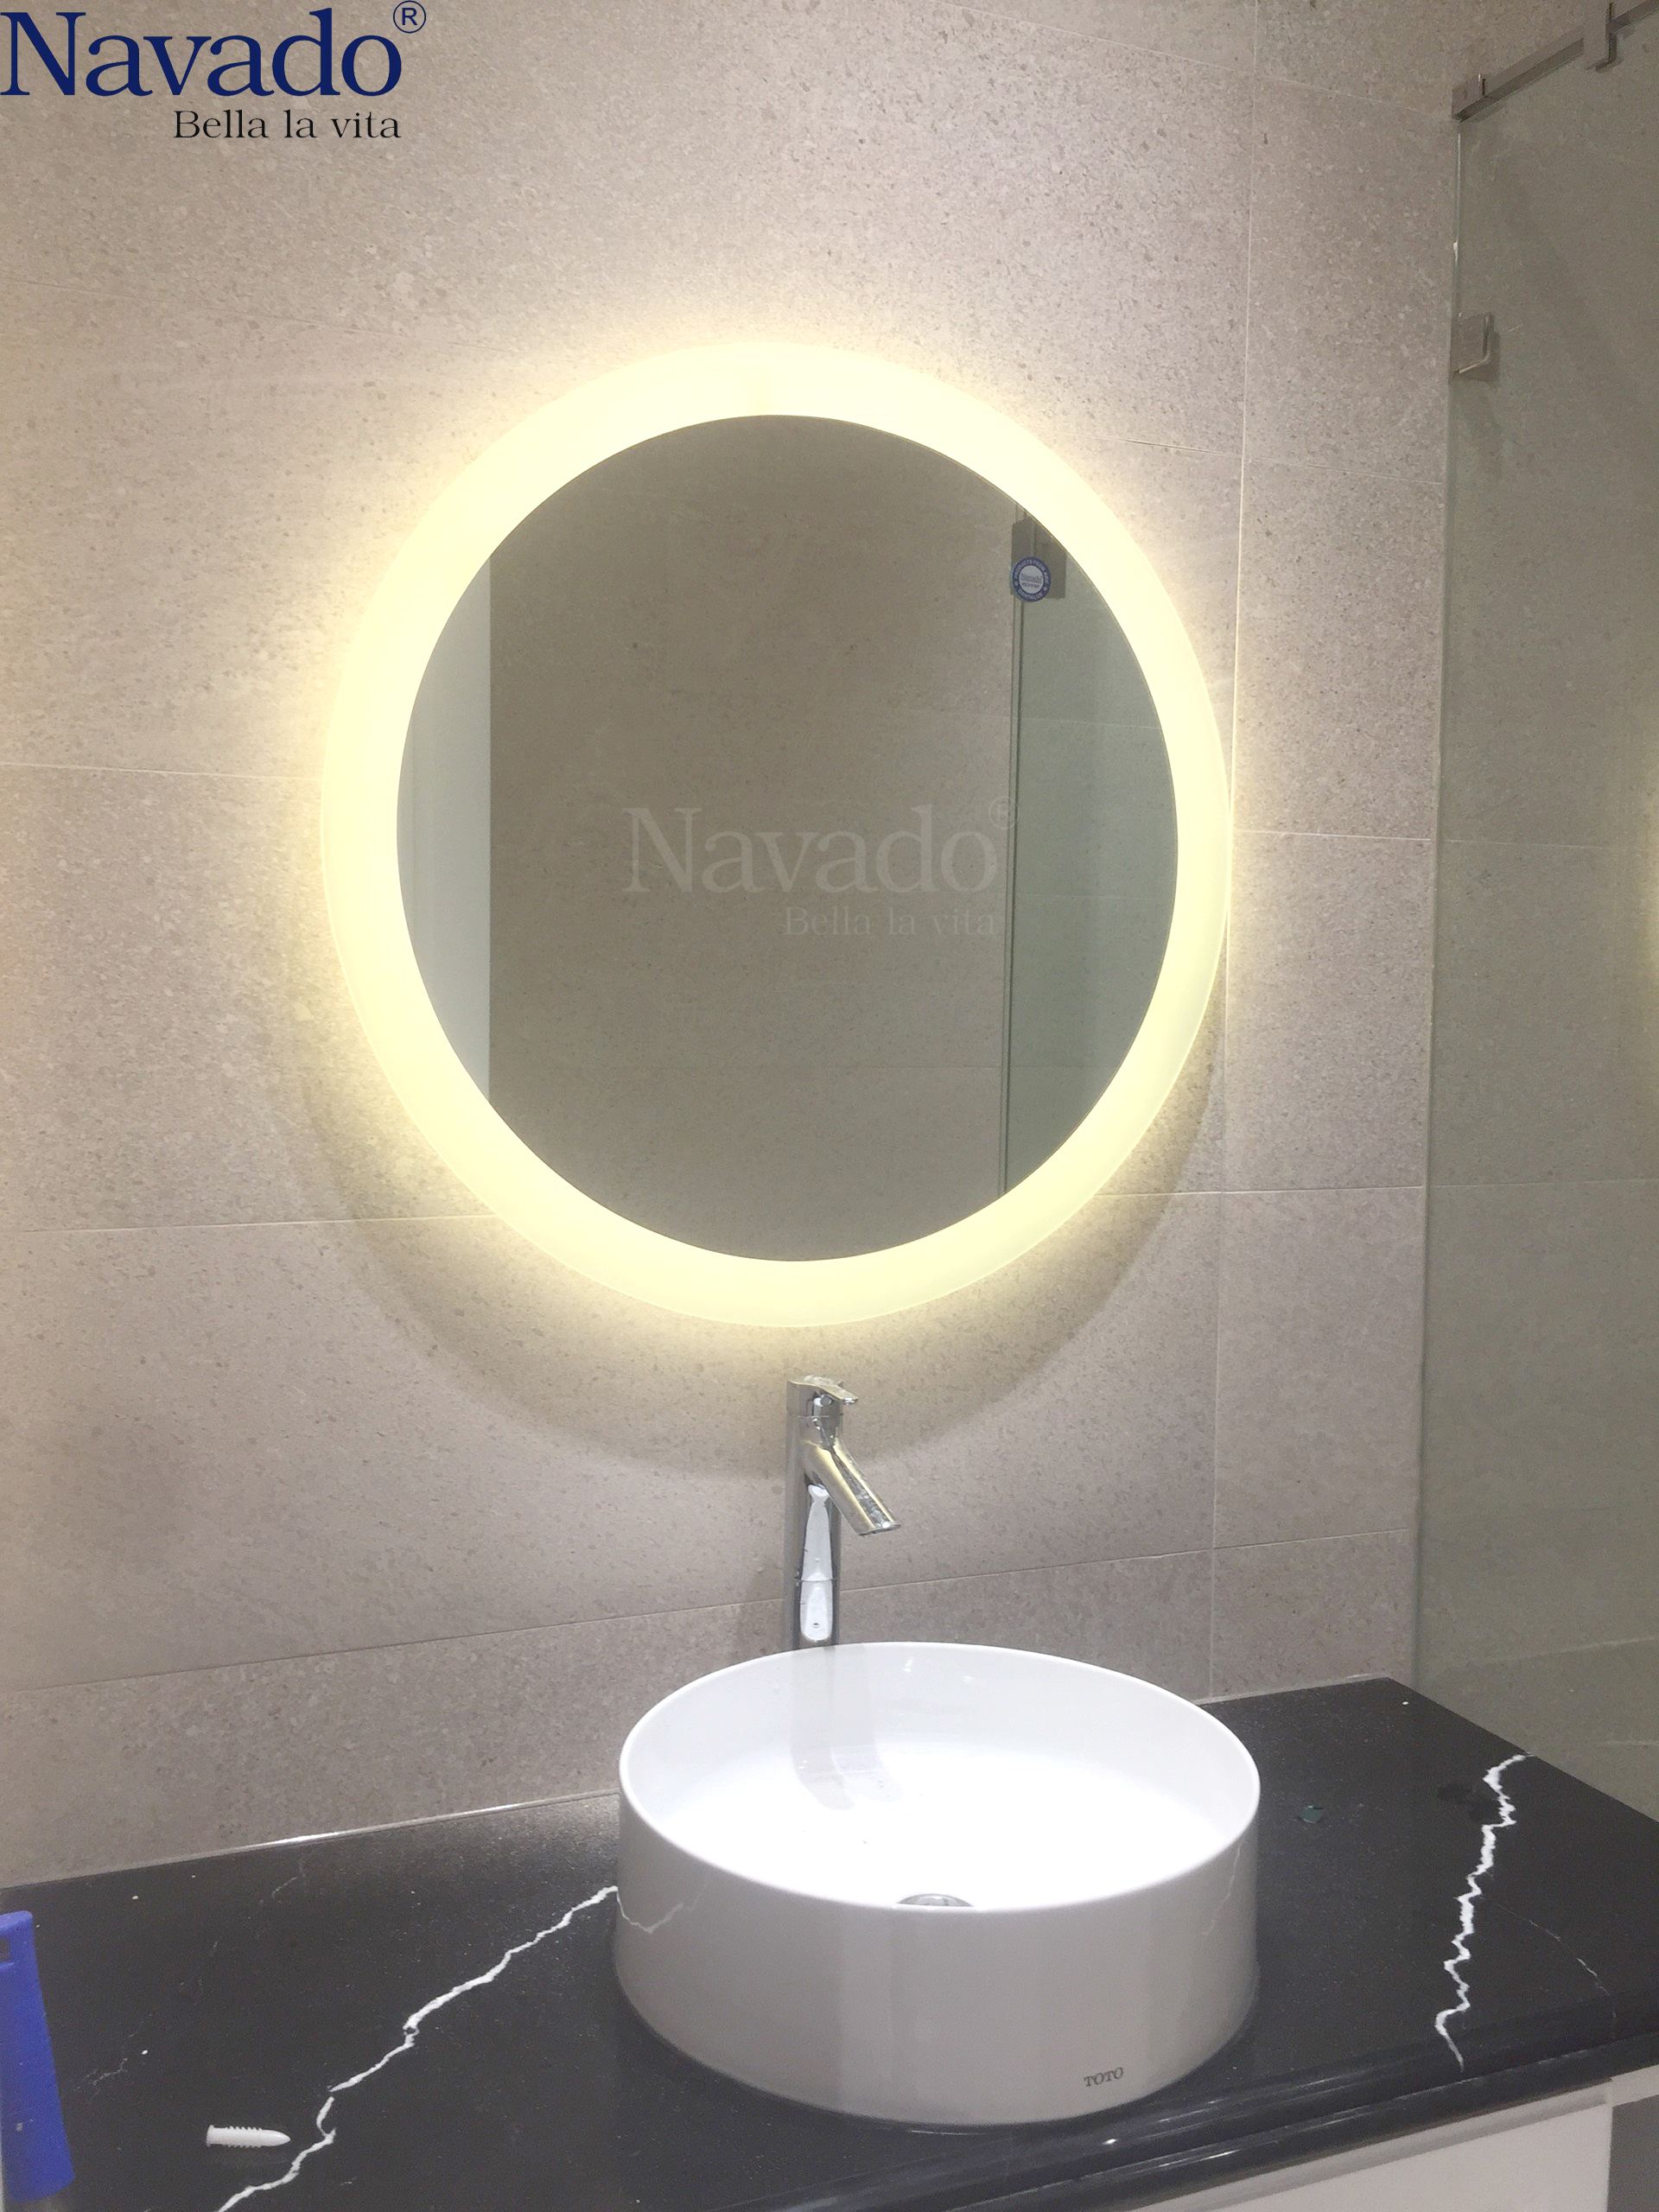 Gương phòng tắm của chúng tôi không chỉ là một vật dụng cần thiết mà còn là một phụ kiện trang trí đẹp mắt. Hãy tìm hiểu và chọn cho mình một chiếc gương phòng tắm đẹp nhất tại cửa hàng của chúng tôi.